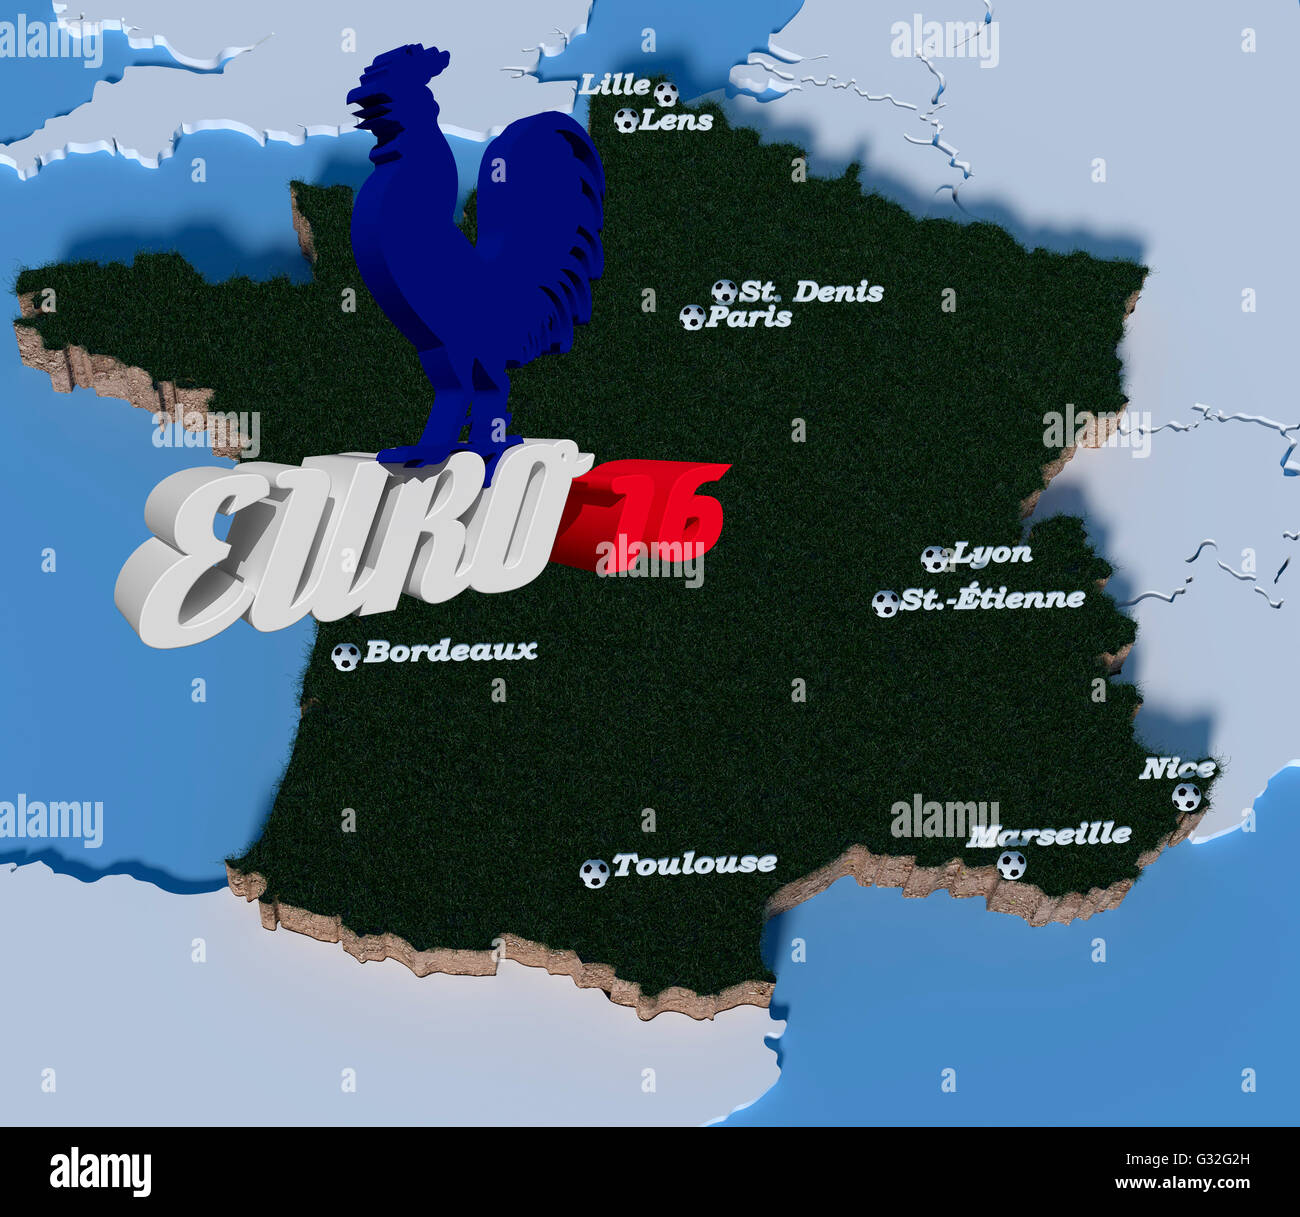 Vista dall'alto su un 3D France-Contour con città delle partite disputate questa euopean Championship 2016, sulle lettere Euro 16 siede una Gallia Foto Stock